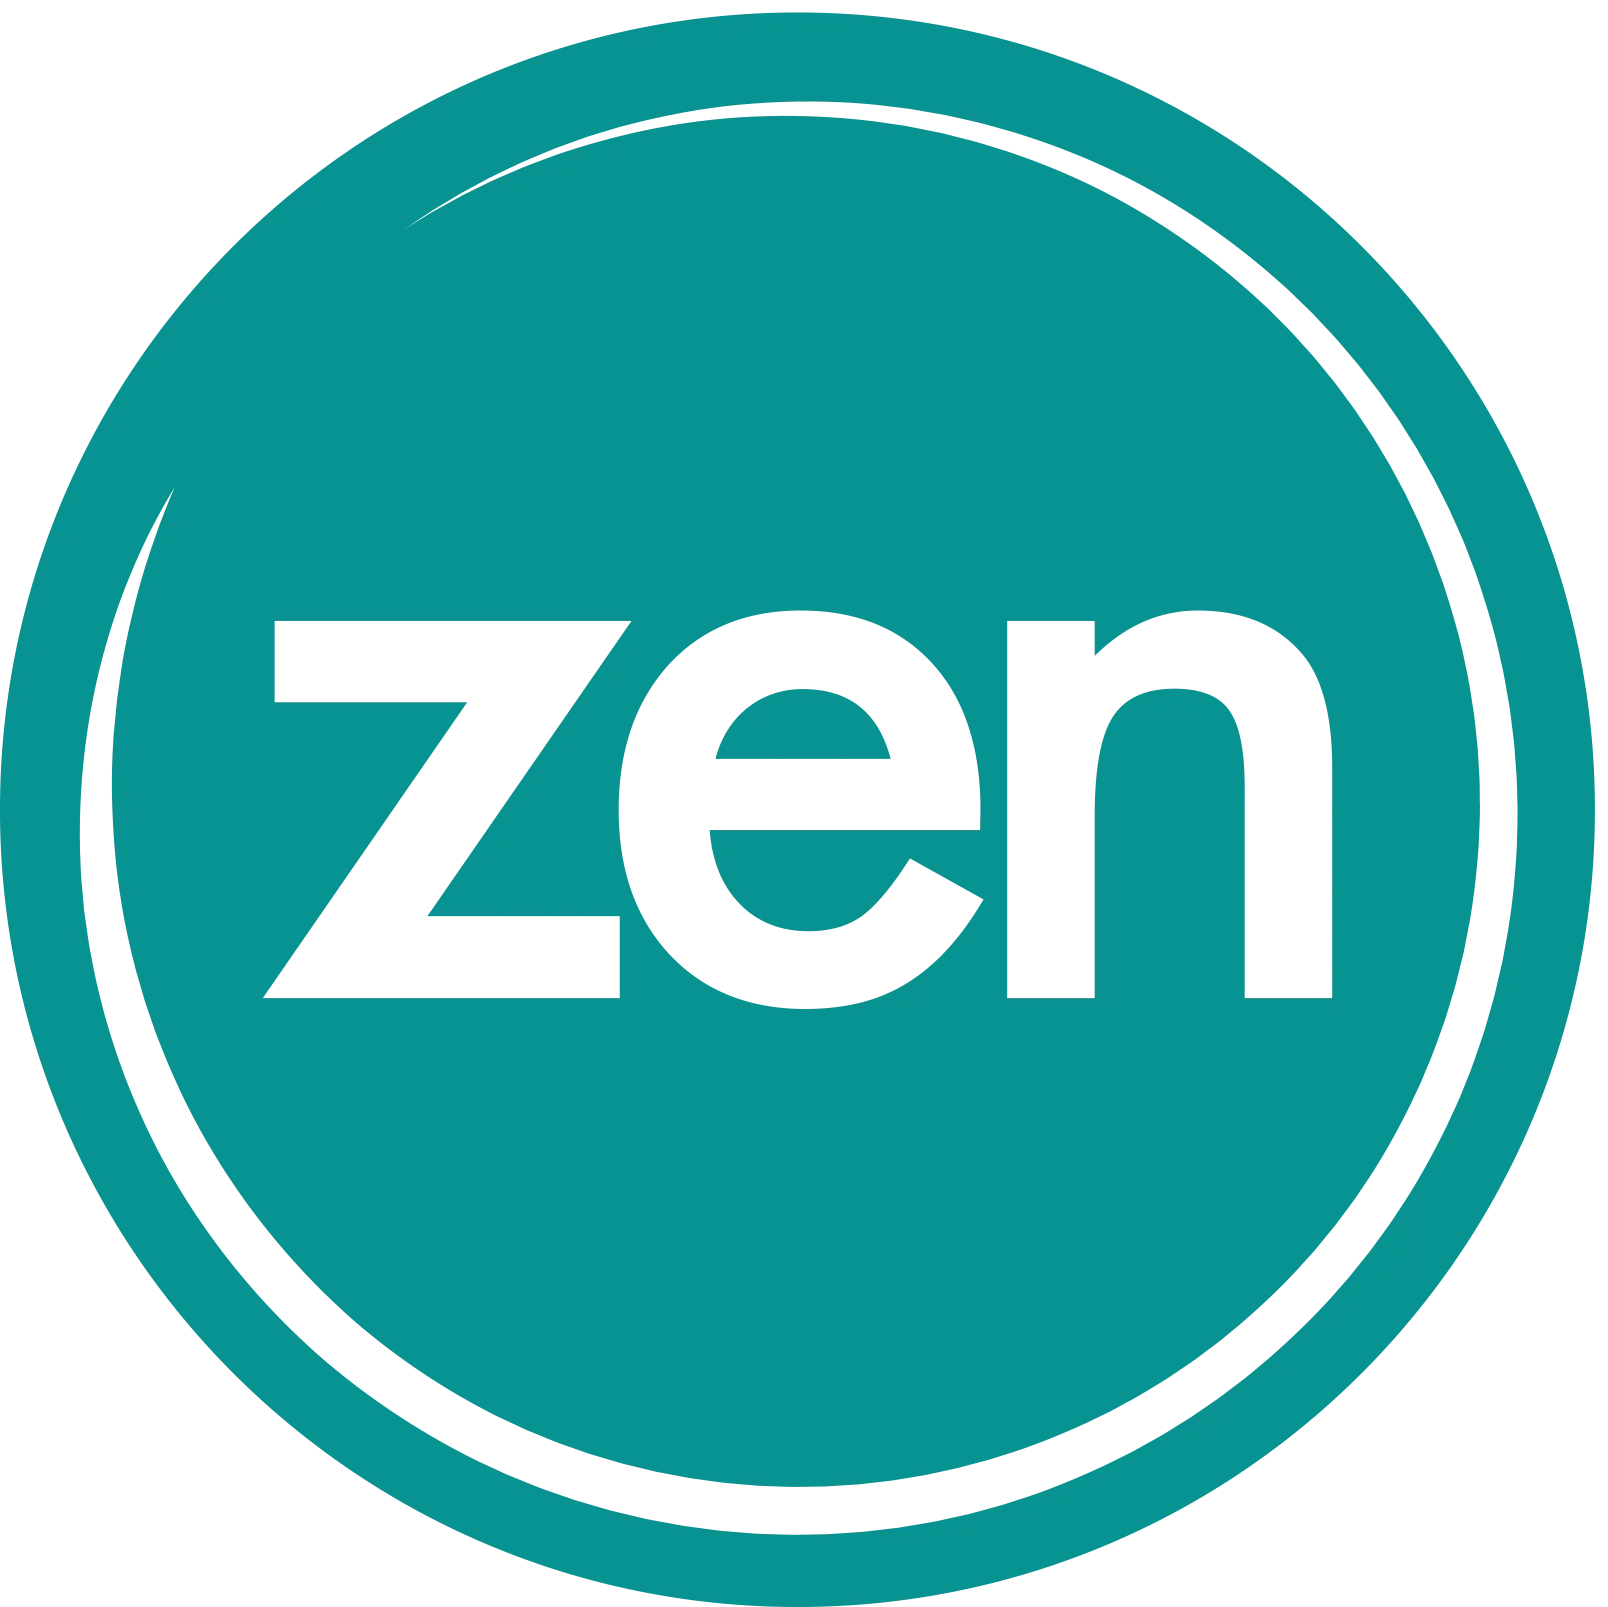  Zen Internet promo code